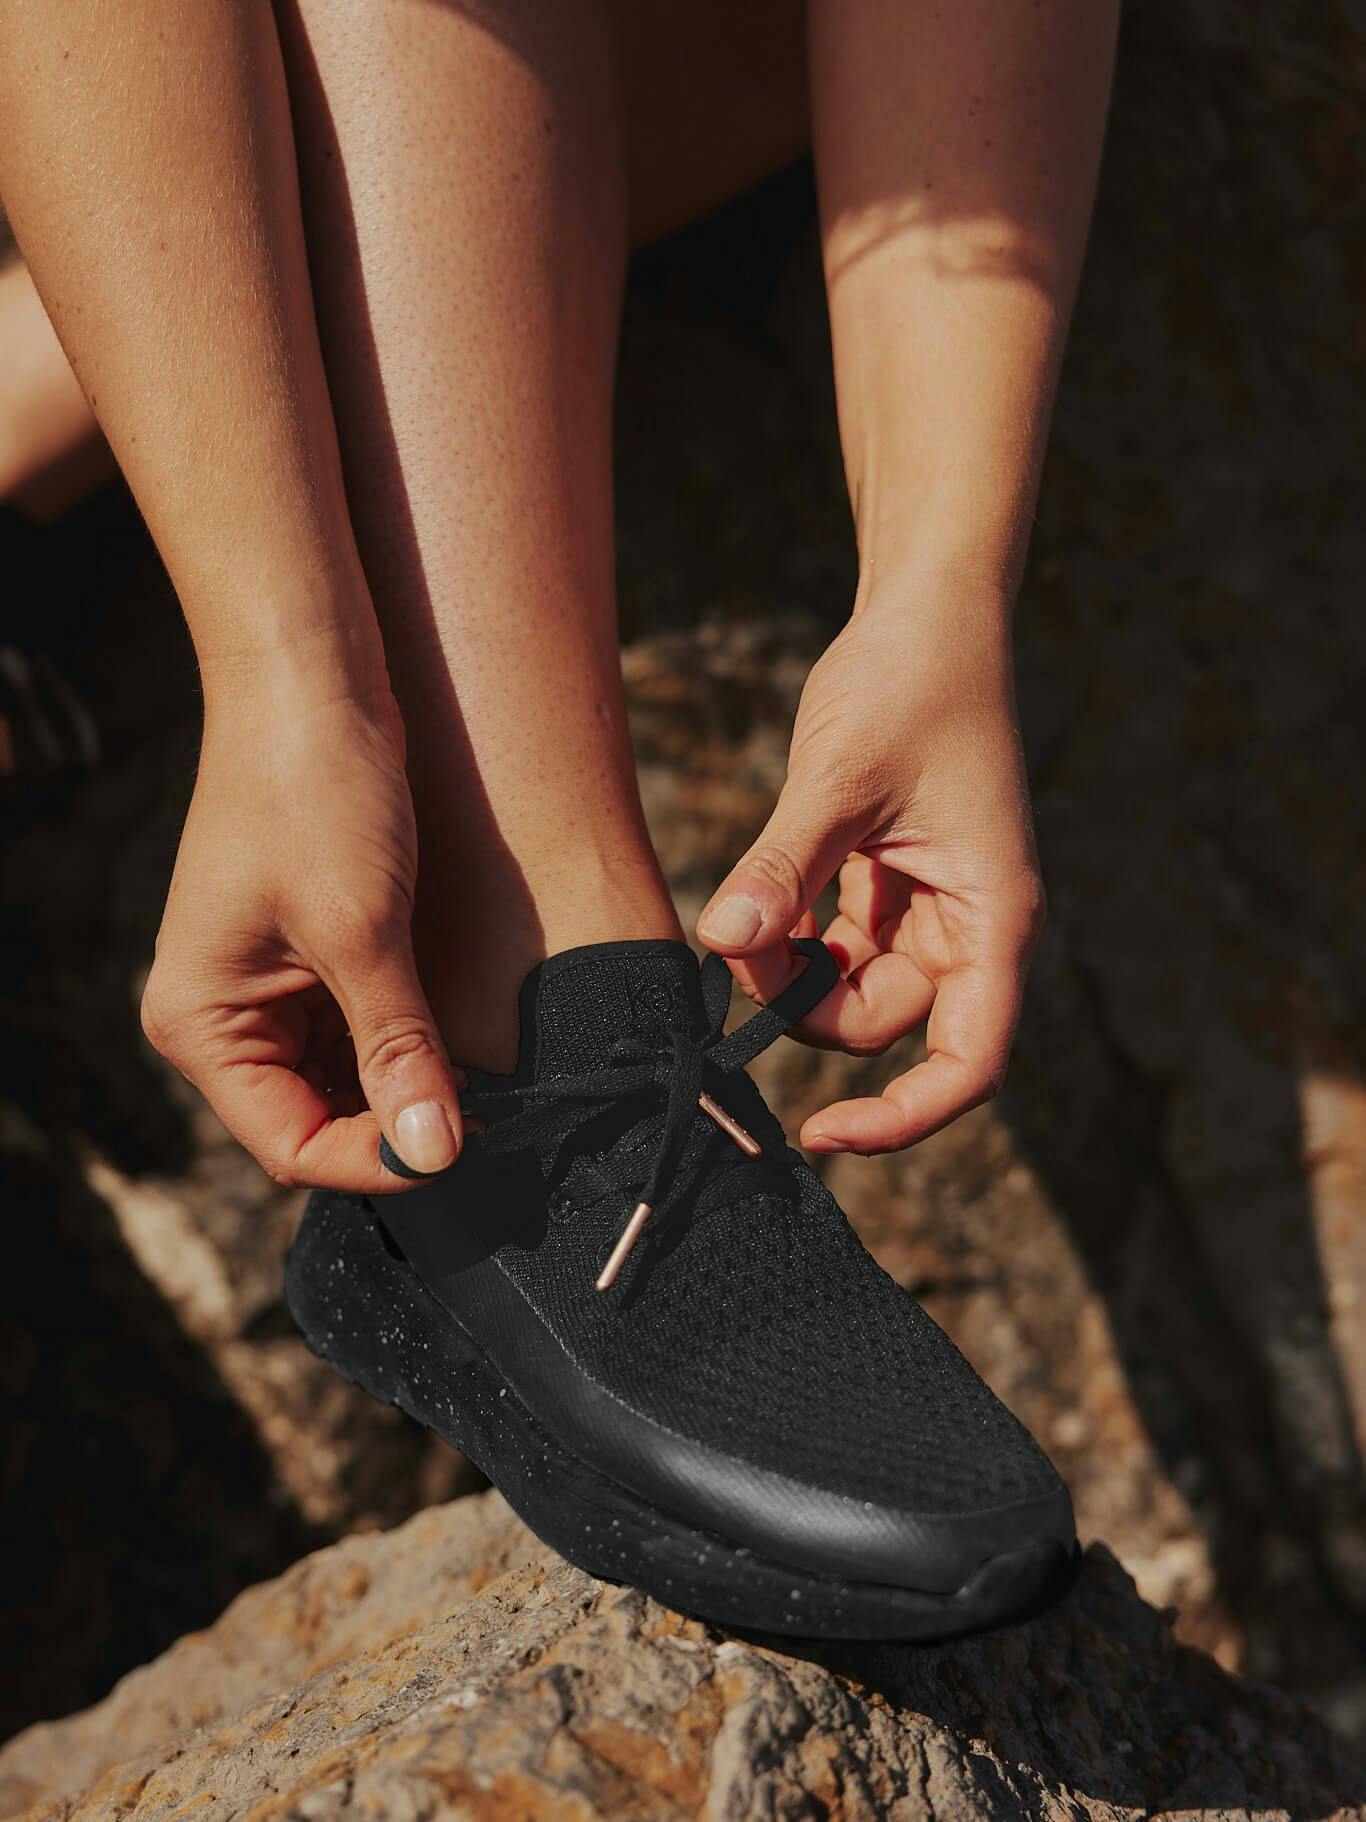 Fleksibel og funksjonell, disse skoene er designet for å følge deg gjennom alle sommeraktiviteter. Bruk dem som klassiske sneakers eller tråkk ned hælen for et enkelt slip-on alternativ.